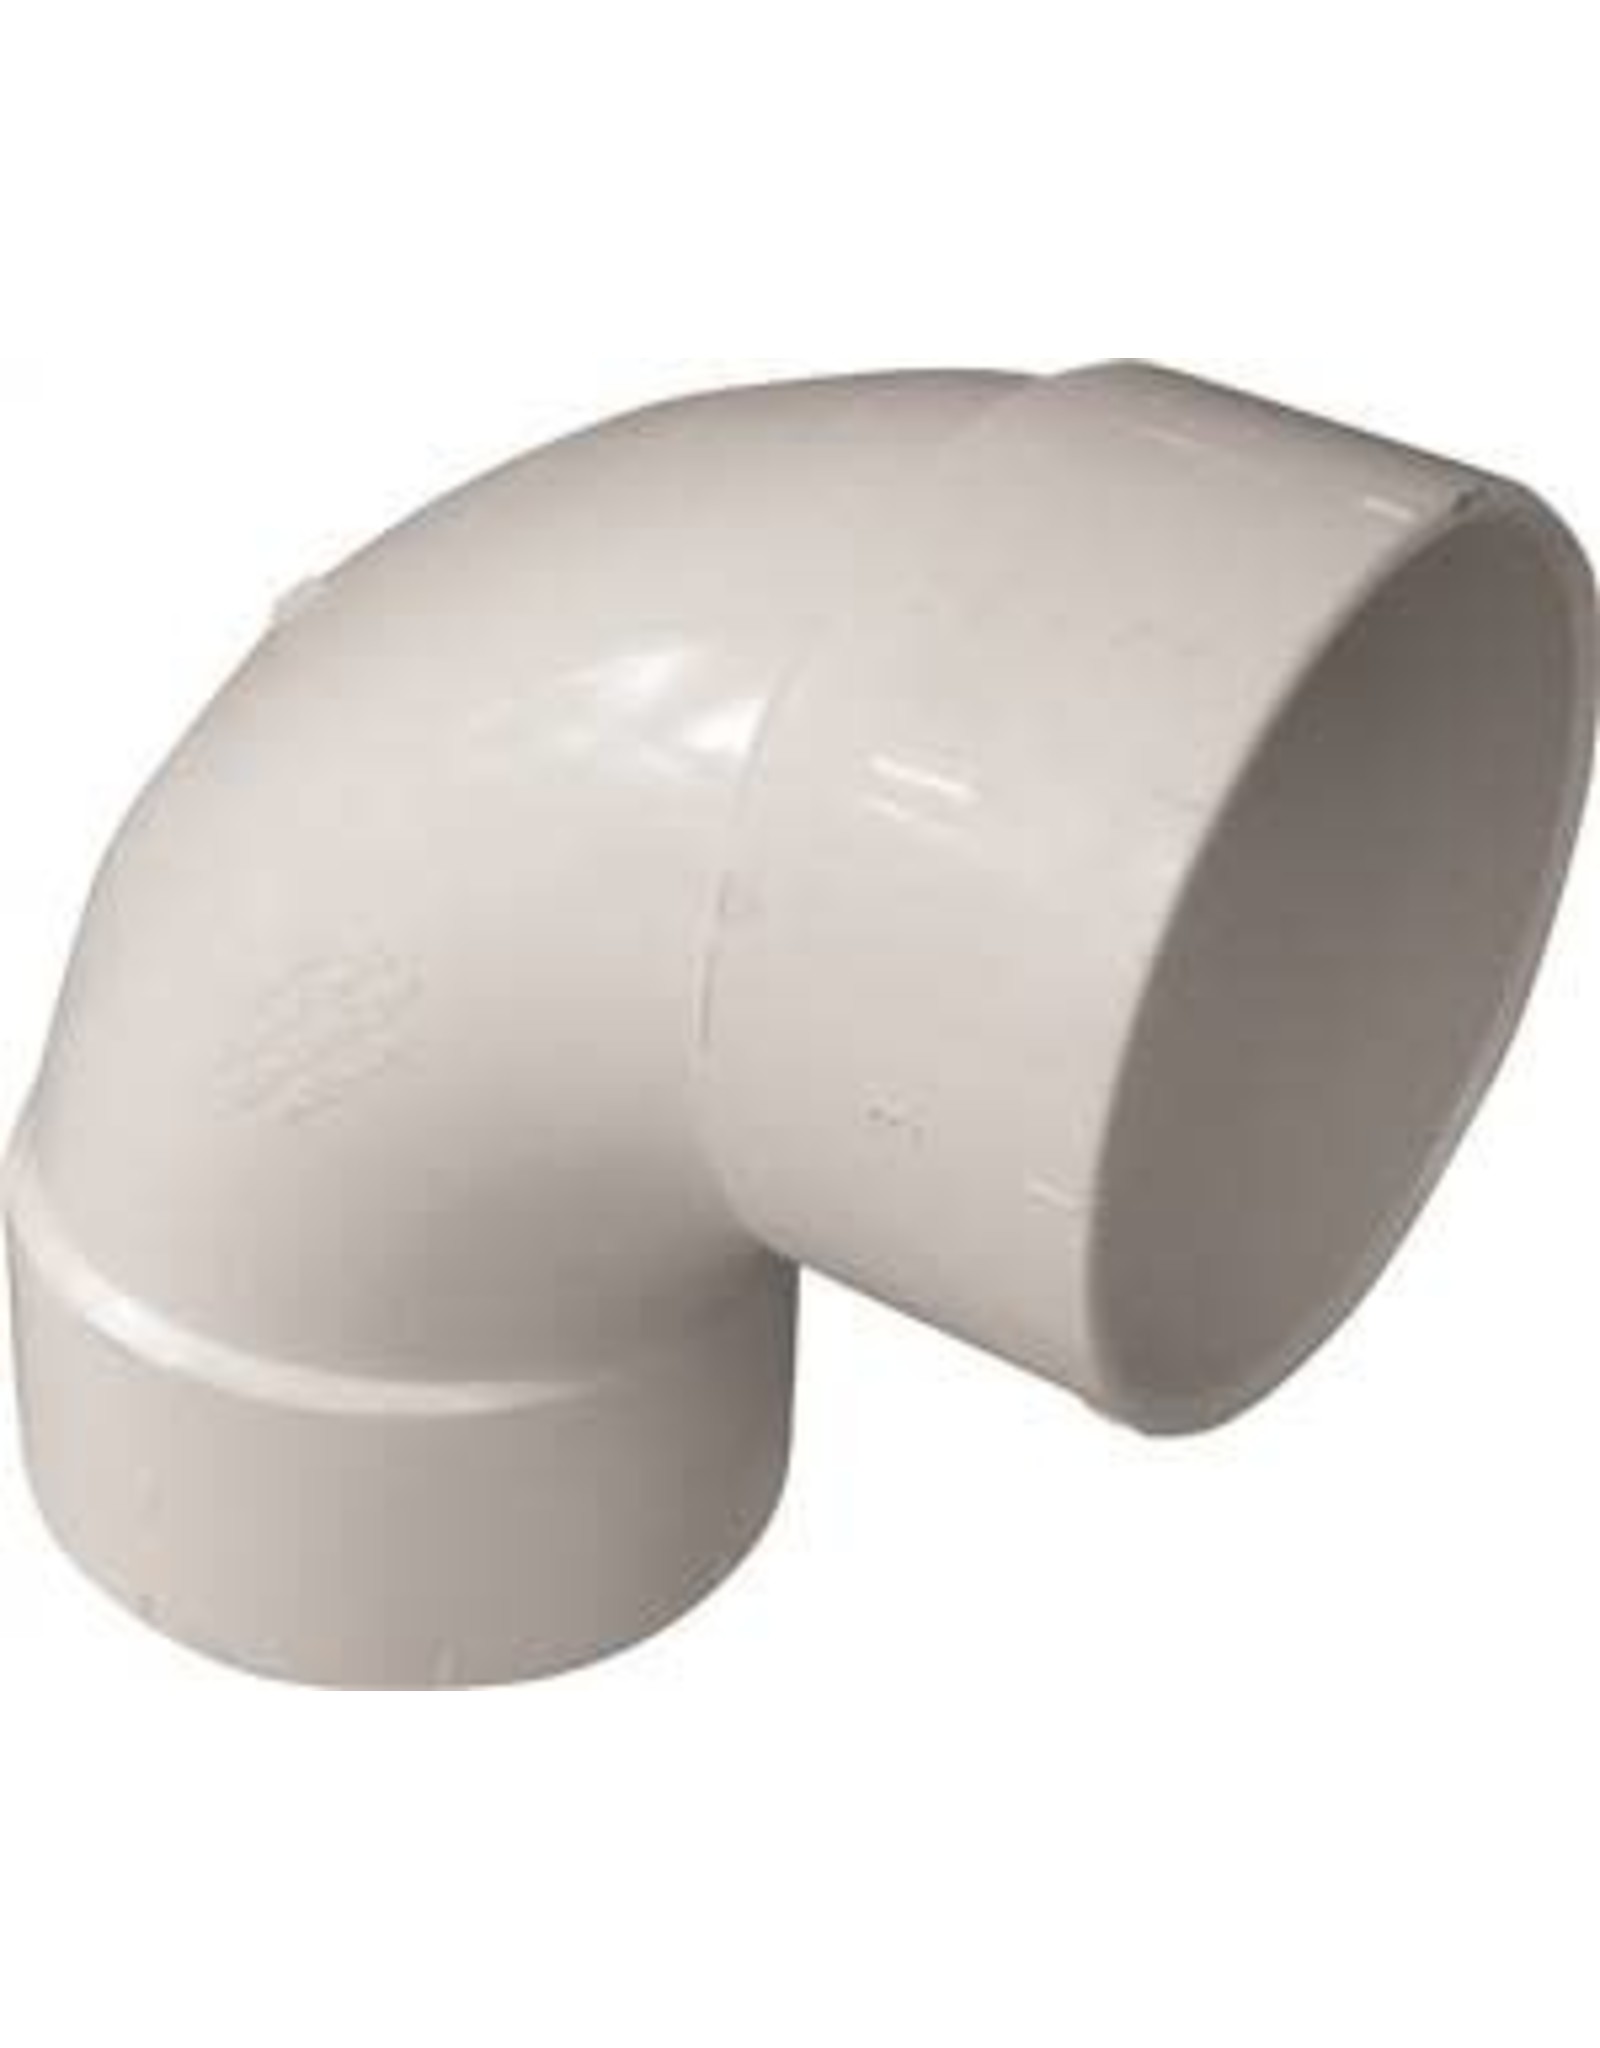 Ipex CANPLAS 414164BC Sanitary Elbow, 4 in, Hub, 90 deg Angle, PVC, White